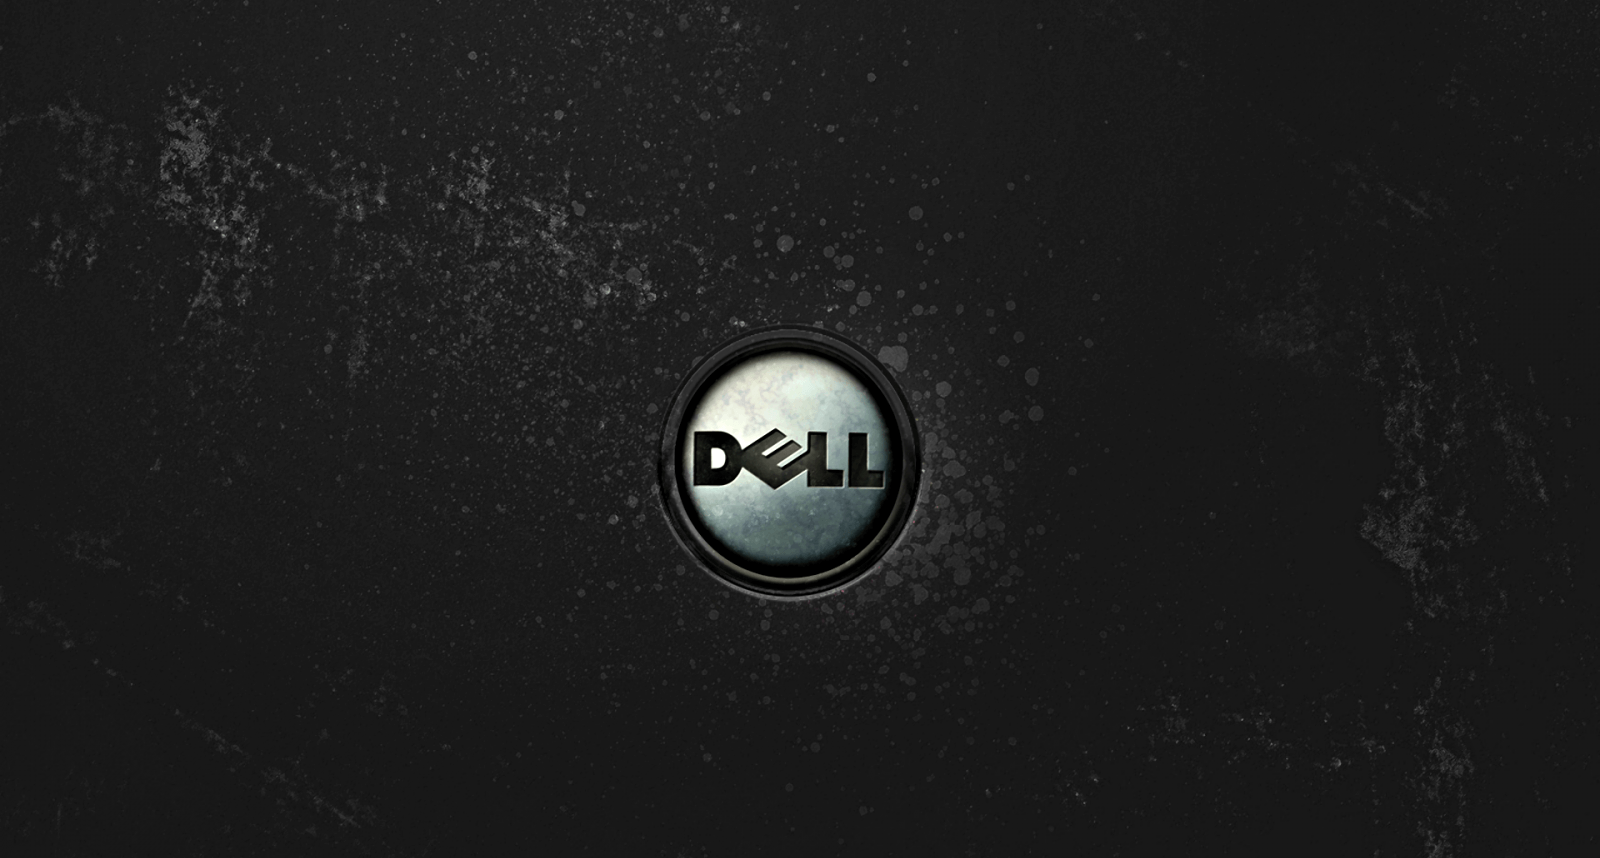 Lainformática Acaba De Volverse Más Fácil Con Dell.